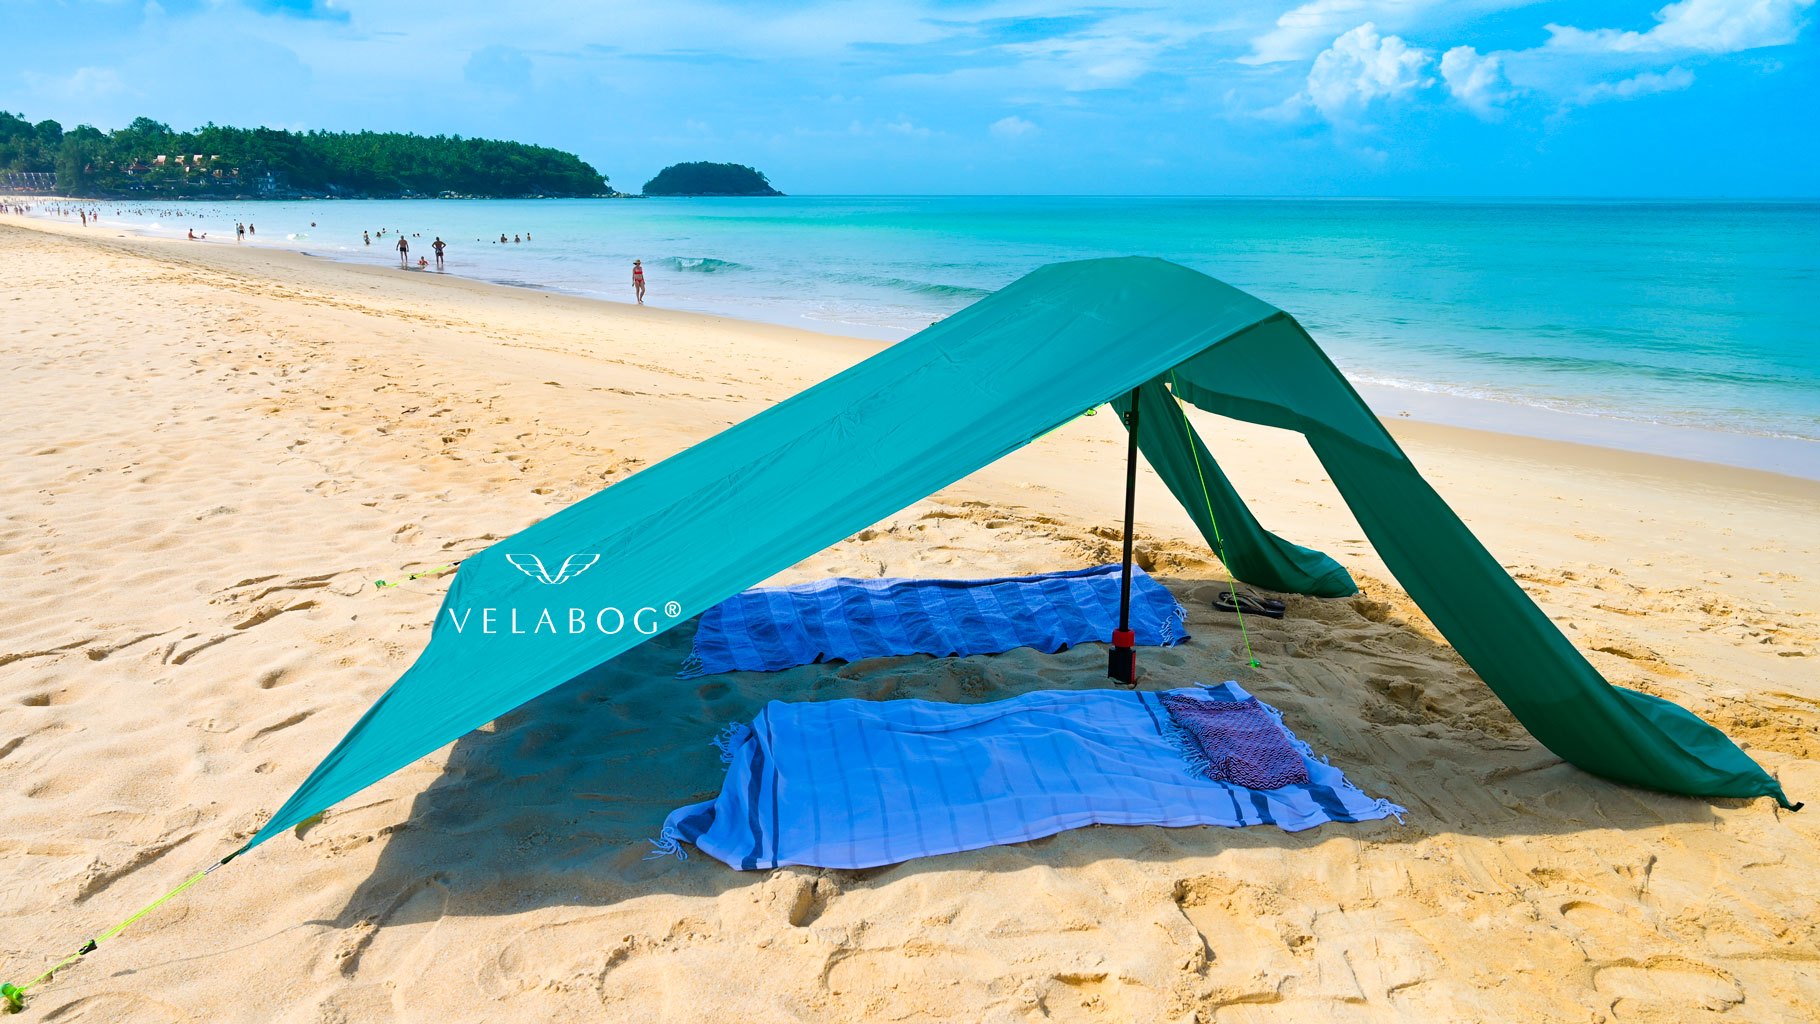 Grünes Strand Sonnensegel Strandzelt Velabog Breeze am windstillen Strand. Strand Sonnensegel, Strandschirm und Strandzelt in einem. Dank seinem leichten Gewicht ist es ein Leichtes weit weg von den Massen zu gehen. Flexibel und unabhängig.